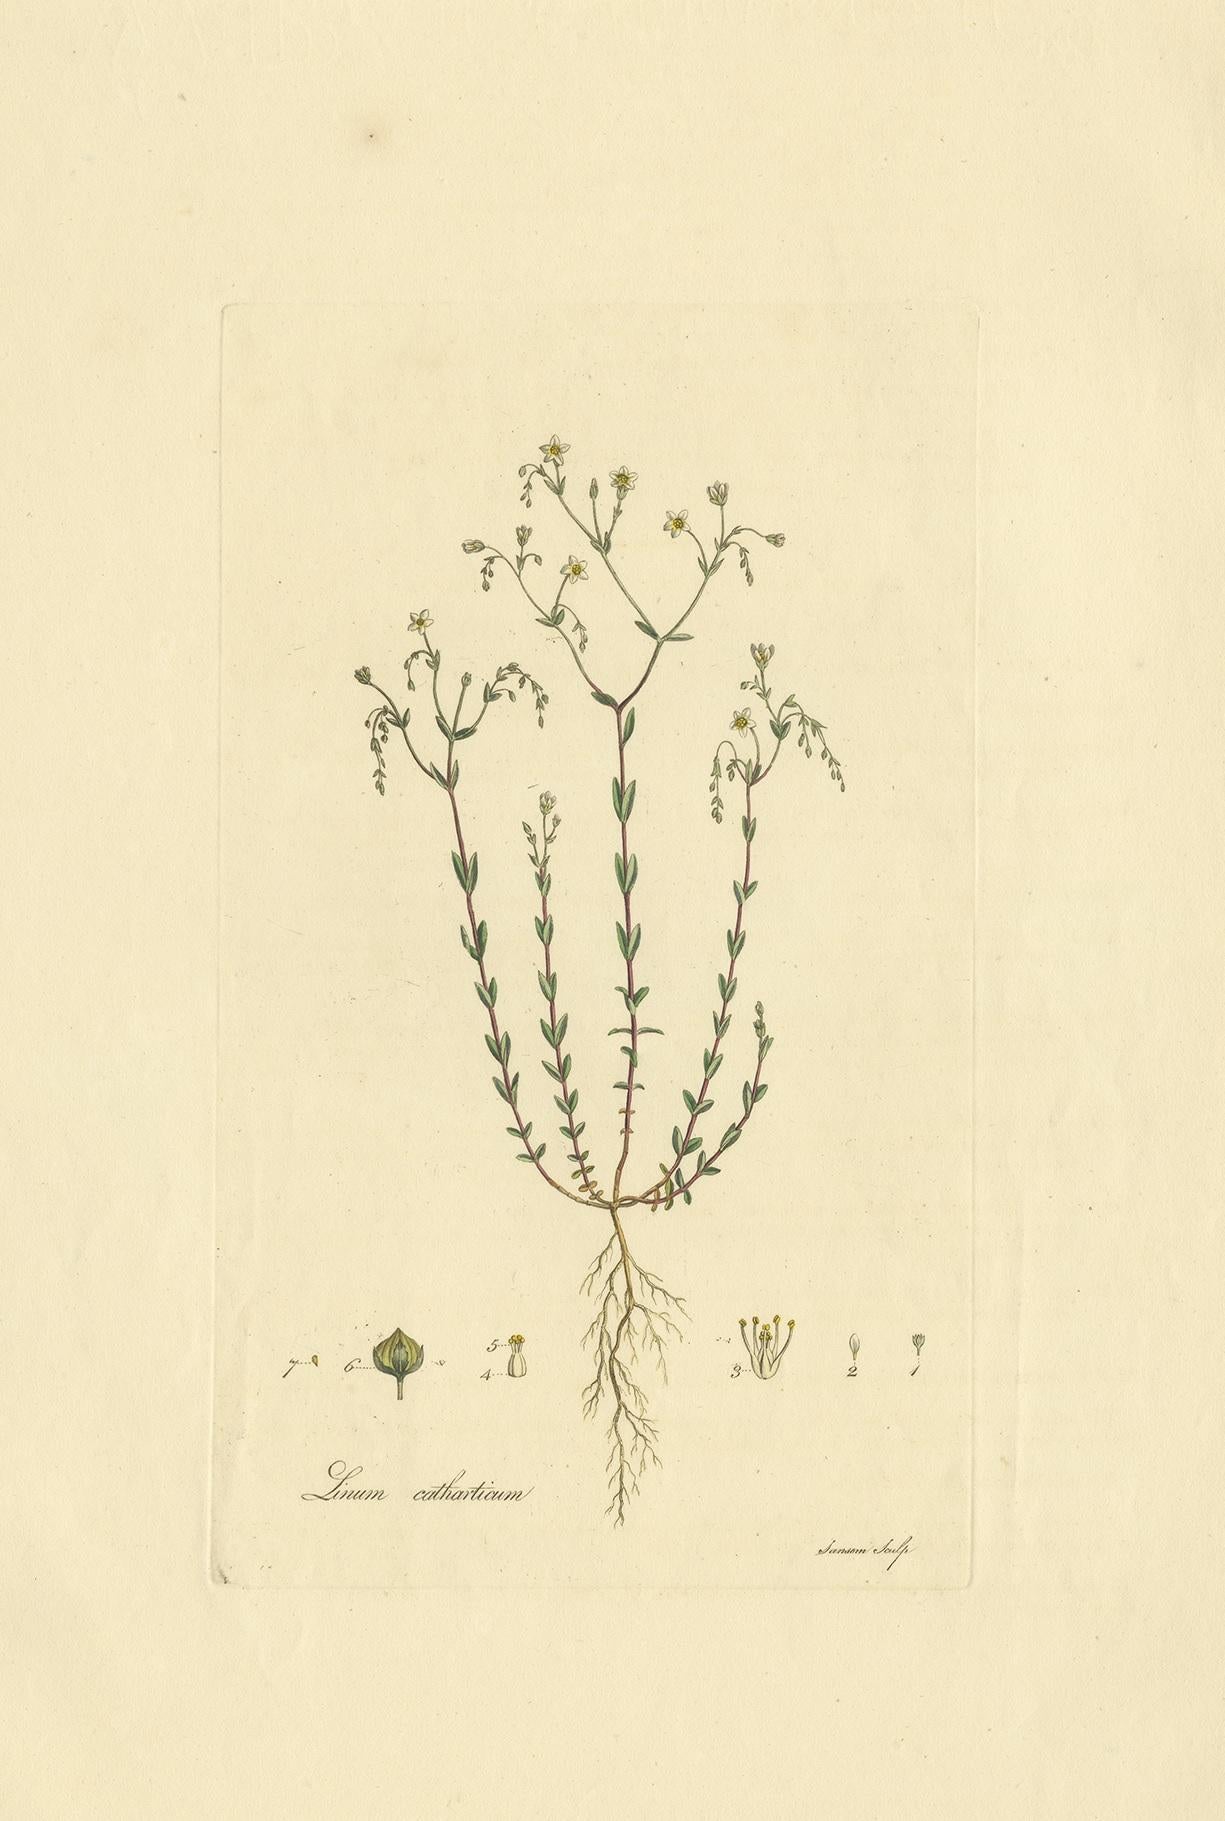 Antiker Botanikdruck mit dem Titel 'Linum Catharticum'. Handkolorierte Gravur von Linum Catharticum, auch bekannt als Purgierflachs oder Feenflachs. Dieser Druck stammt aus der 